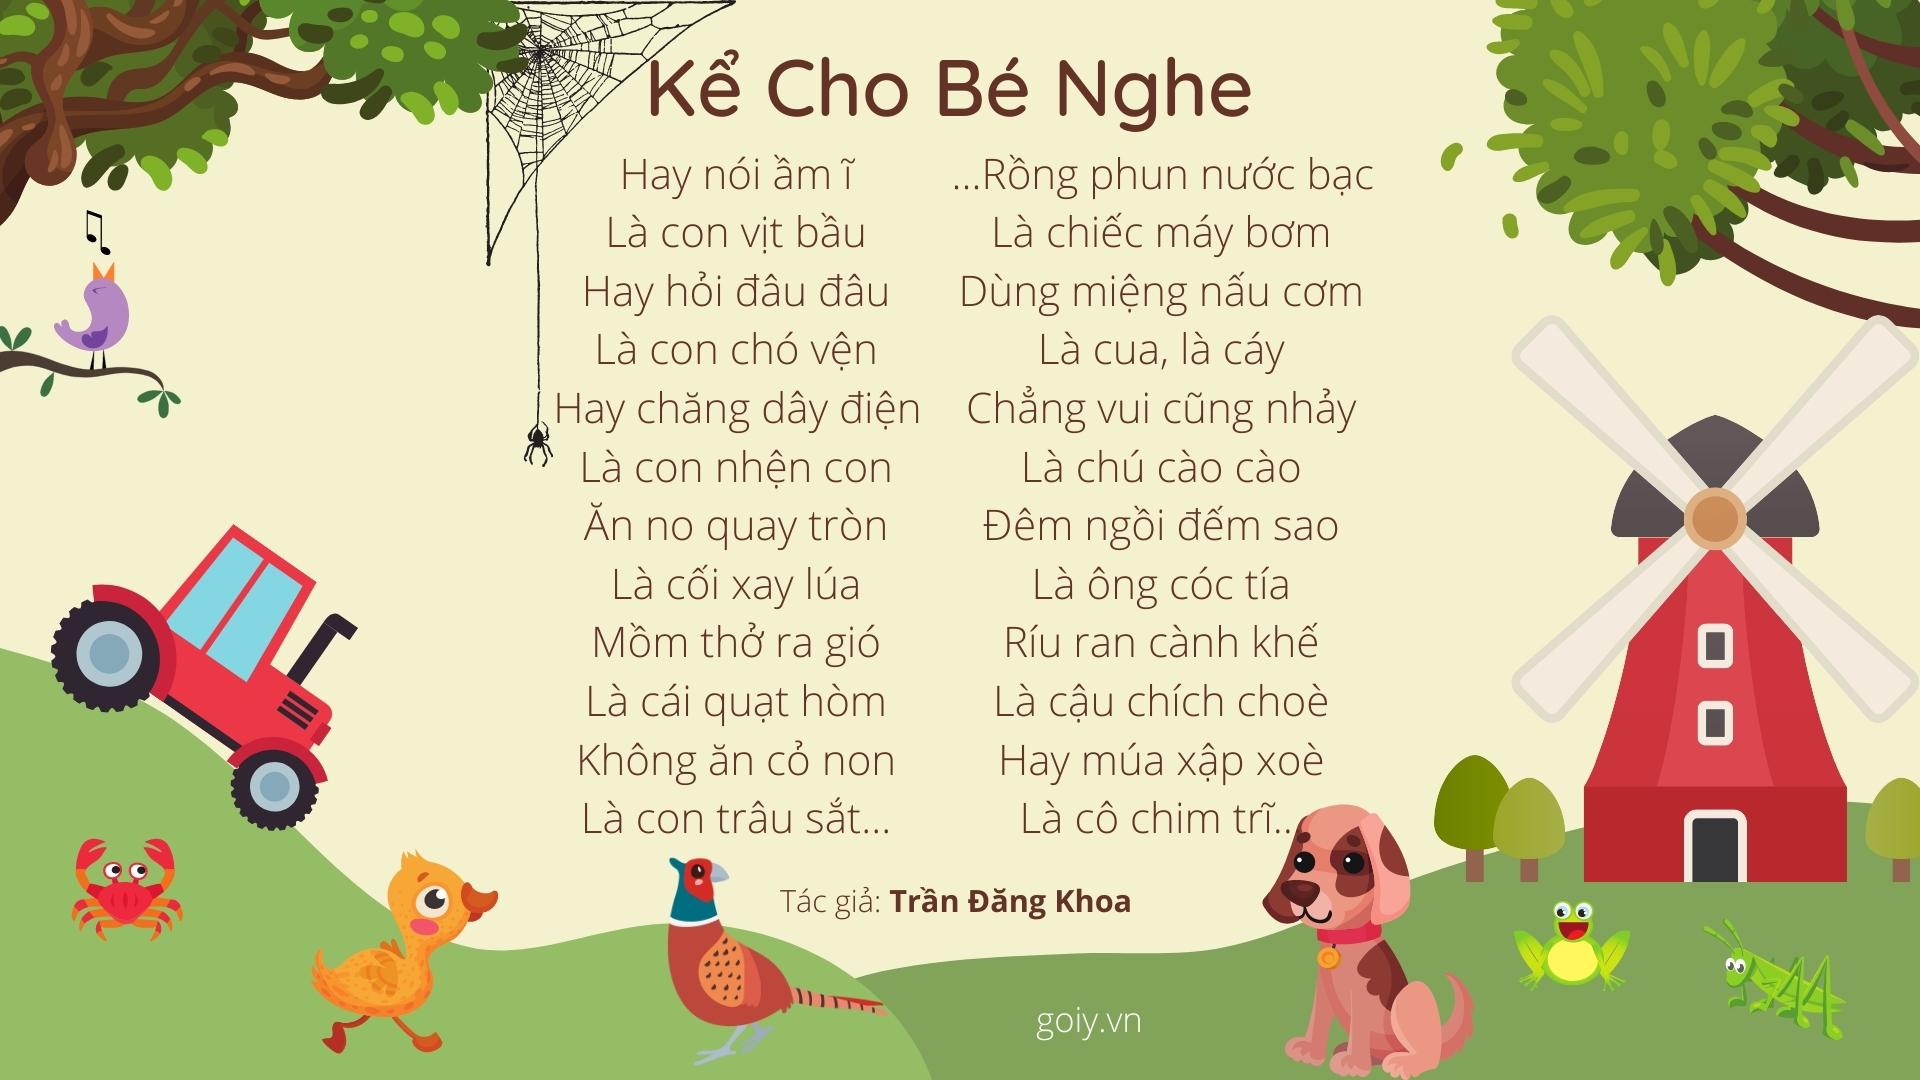 Kể cho bé nghe | Bài thơ Kể cho bé nghe (Trần Đăng Khoa, 1969)